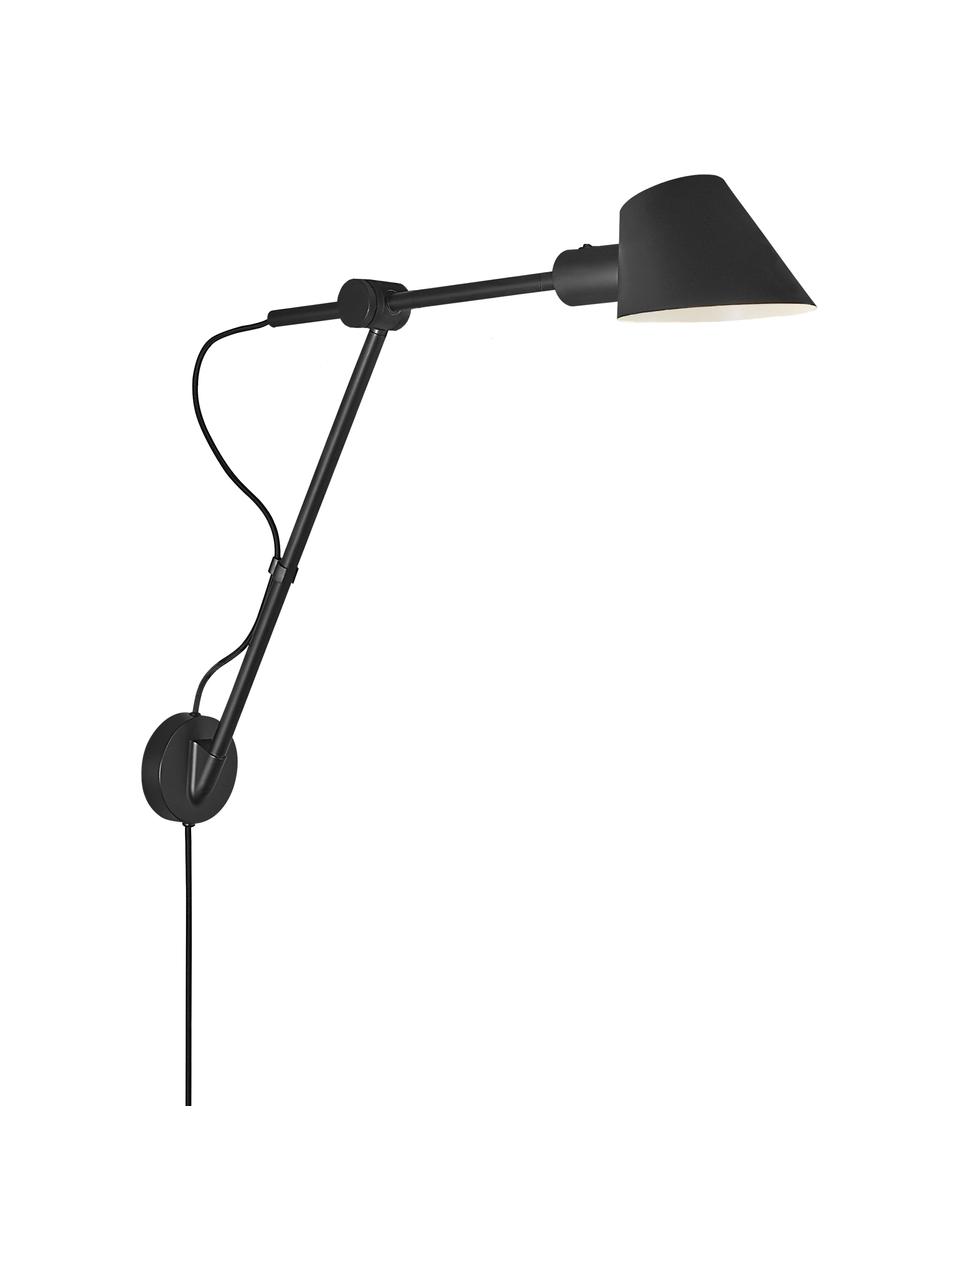 Grote wandlamp Stay met stekker, Lampenkap: gecoat metaal, Zwart, B 15 x H 55 cm